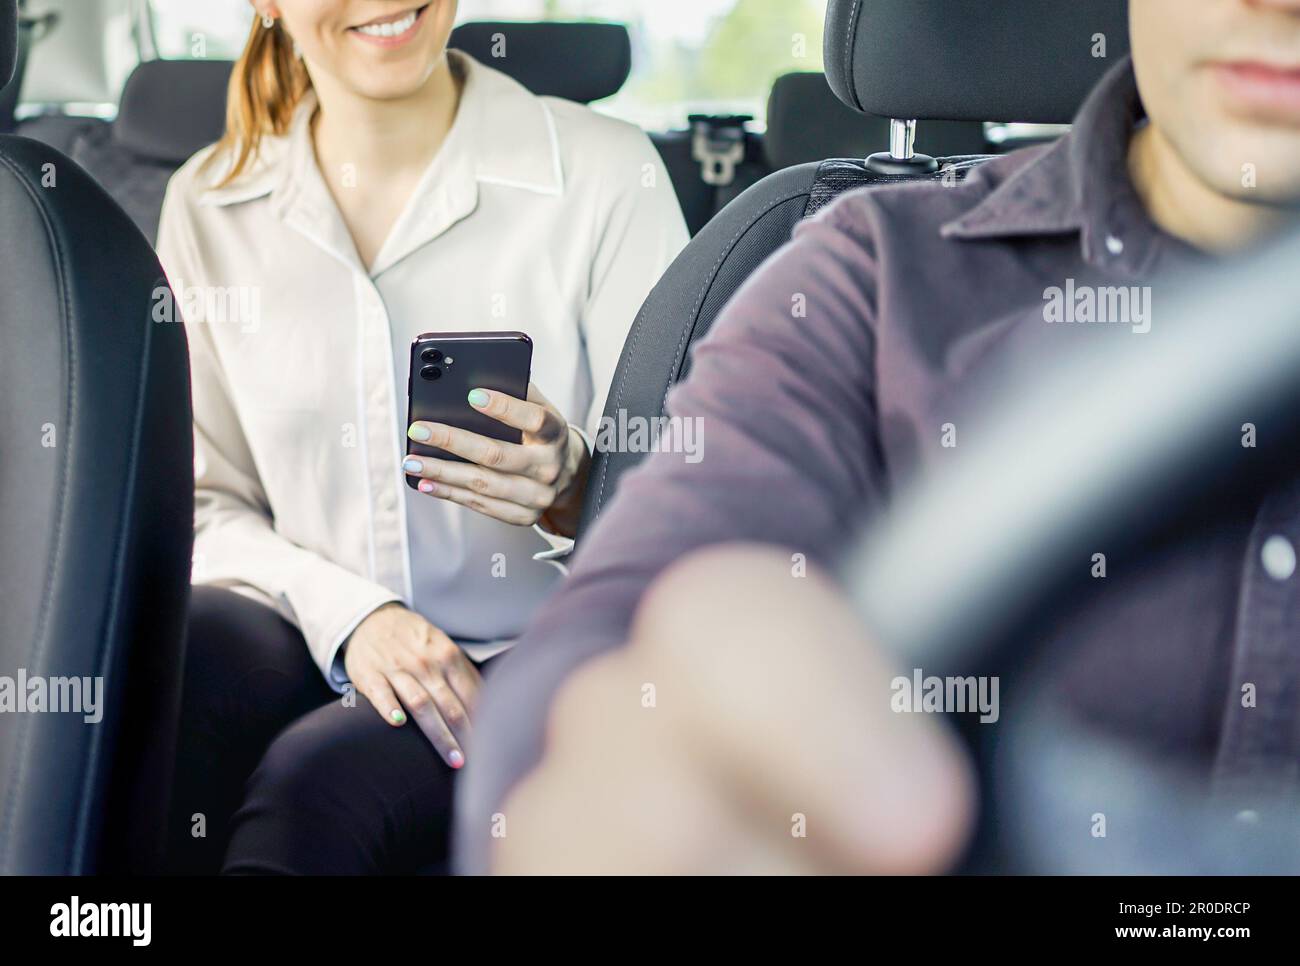 Taxi ou passager en partage de voiture utilisant le téléphone pour payer le trajet en taxi. Paiement mobile, conseil ou avis. Client et chauffeur satisfaits. Femme tenant un téléphone portable. Banque D'Images